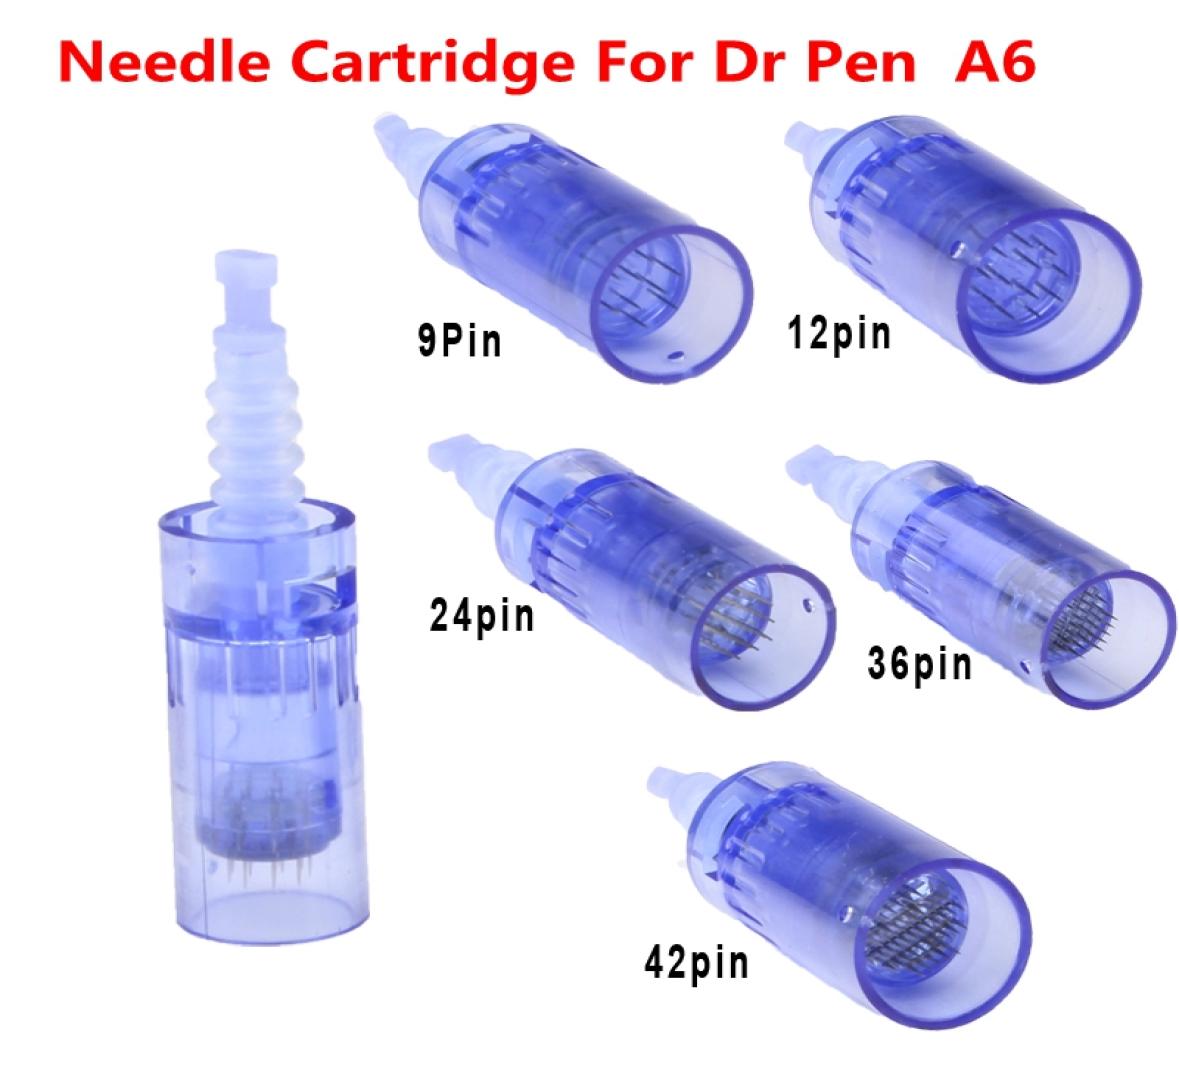 

50pcslot Needle Cartridge For 9123642 nano pin derma pen Microneedle wireless Dermapen Dr Pen ULTIMA A6 needle cartridge8243799